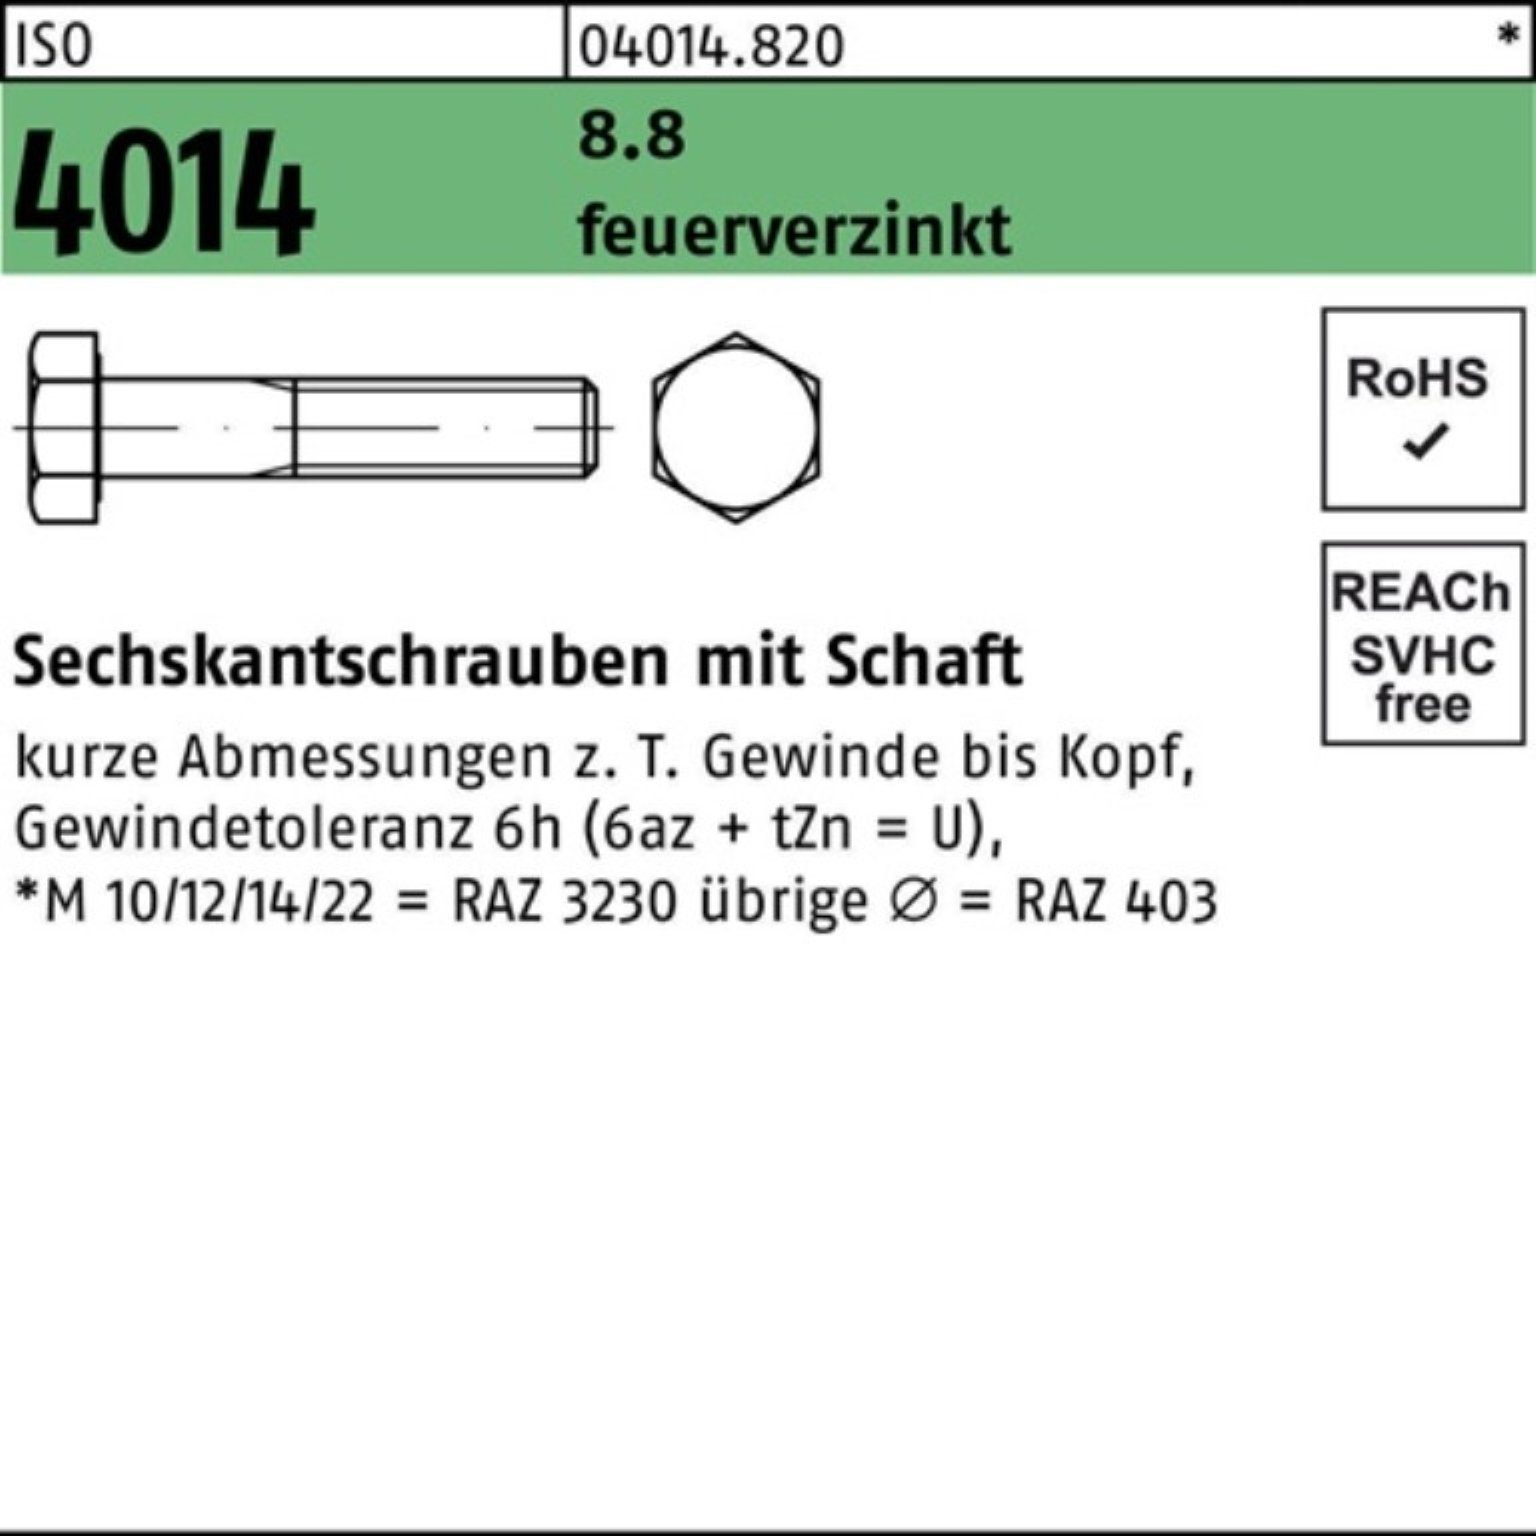 Bufab Sechskantschraube 100er Pack Sechskantschraube ISO 4014 Schaft M20x 75 8.8 feuerverz. 25